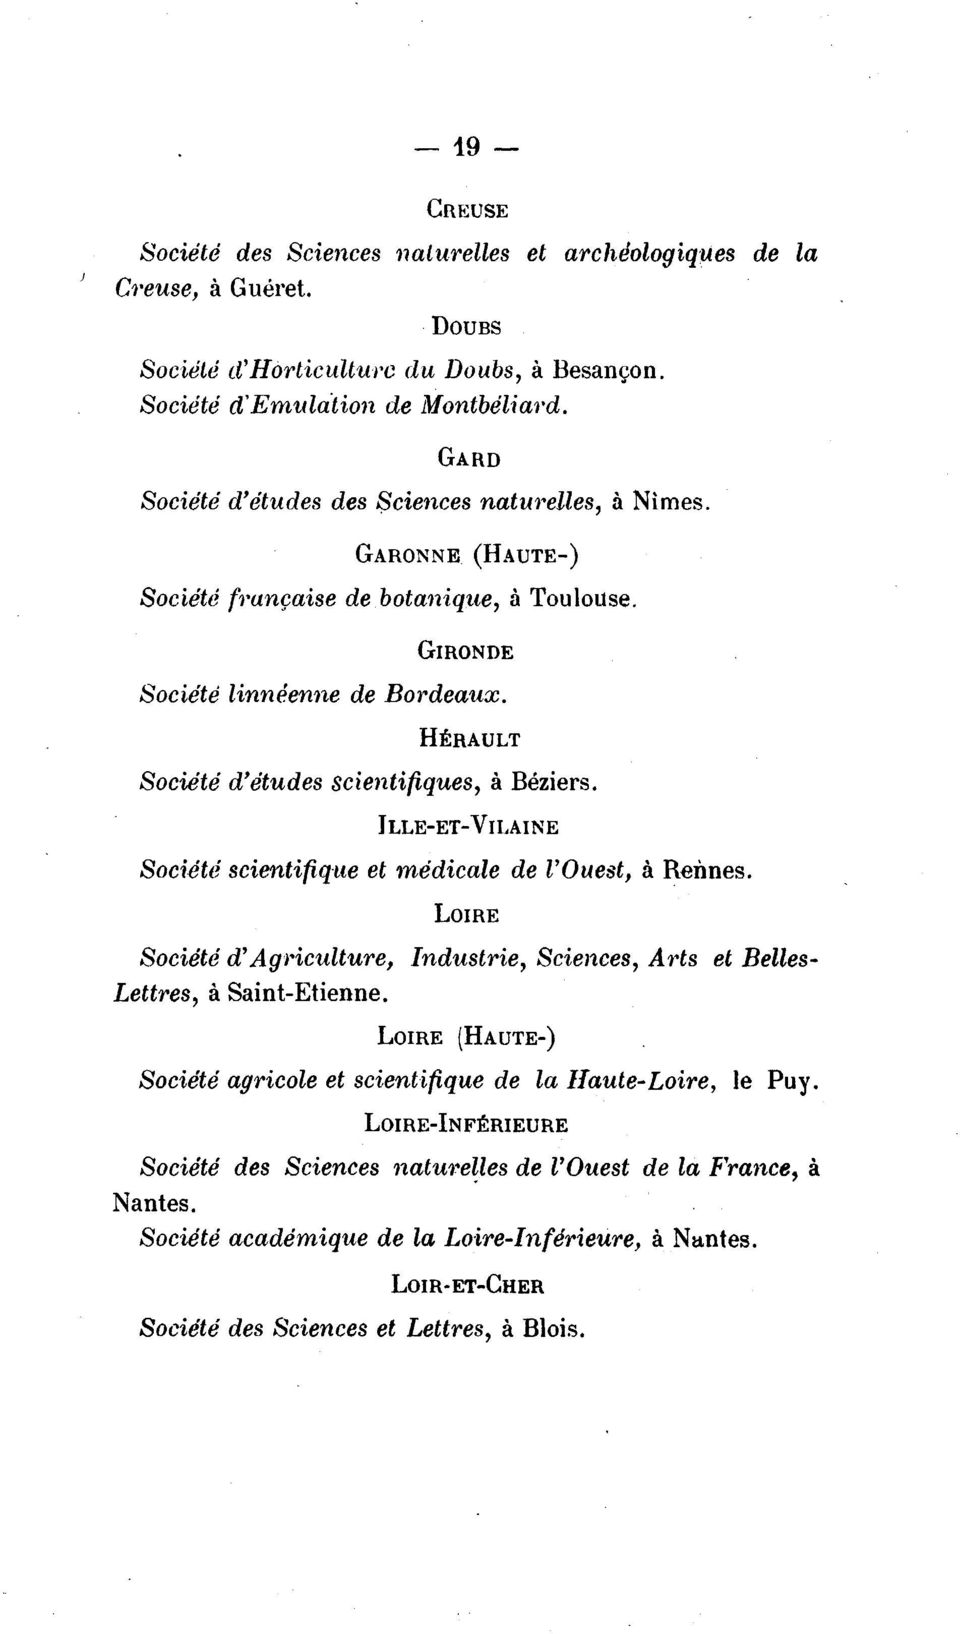 HERAULT Societe d'etudes scientifiques, a Beziers. ILLE-ET-VII,AINE Societe scientifique et medicale de l'ouest, a Rennes.